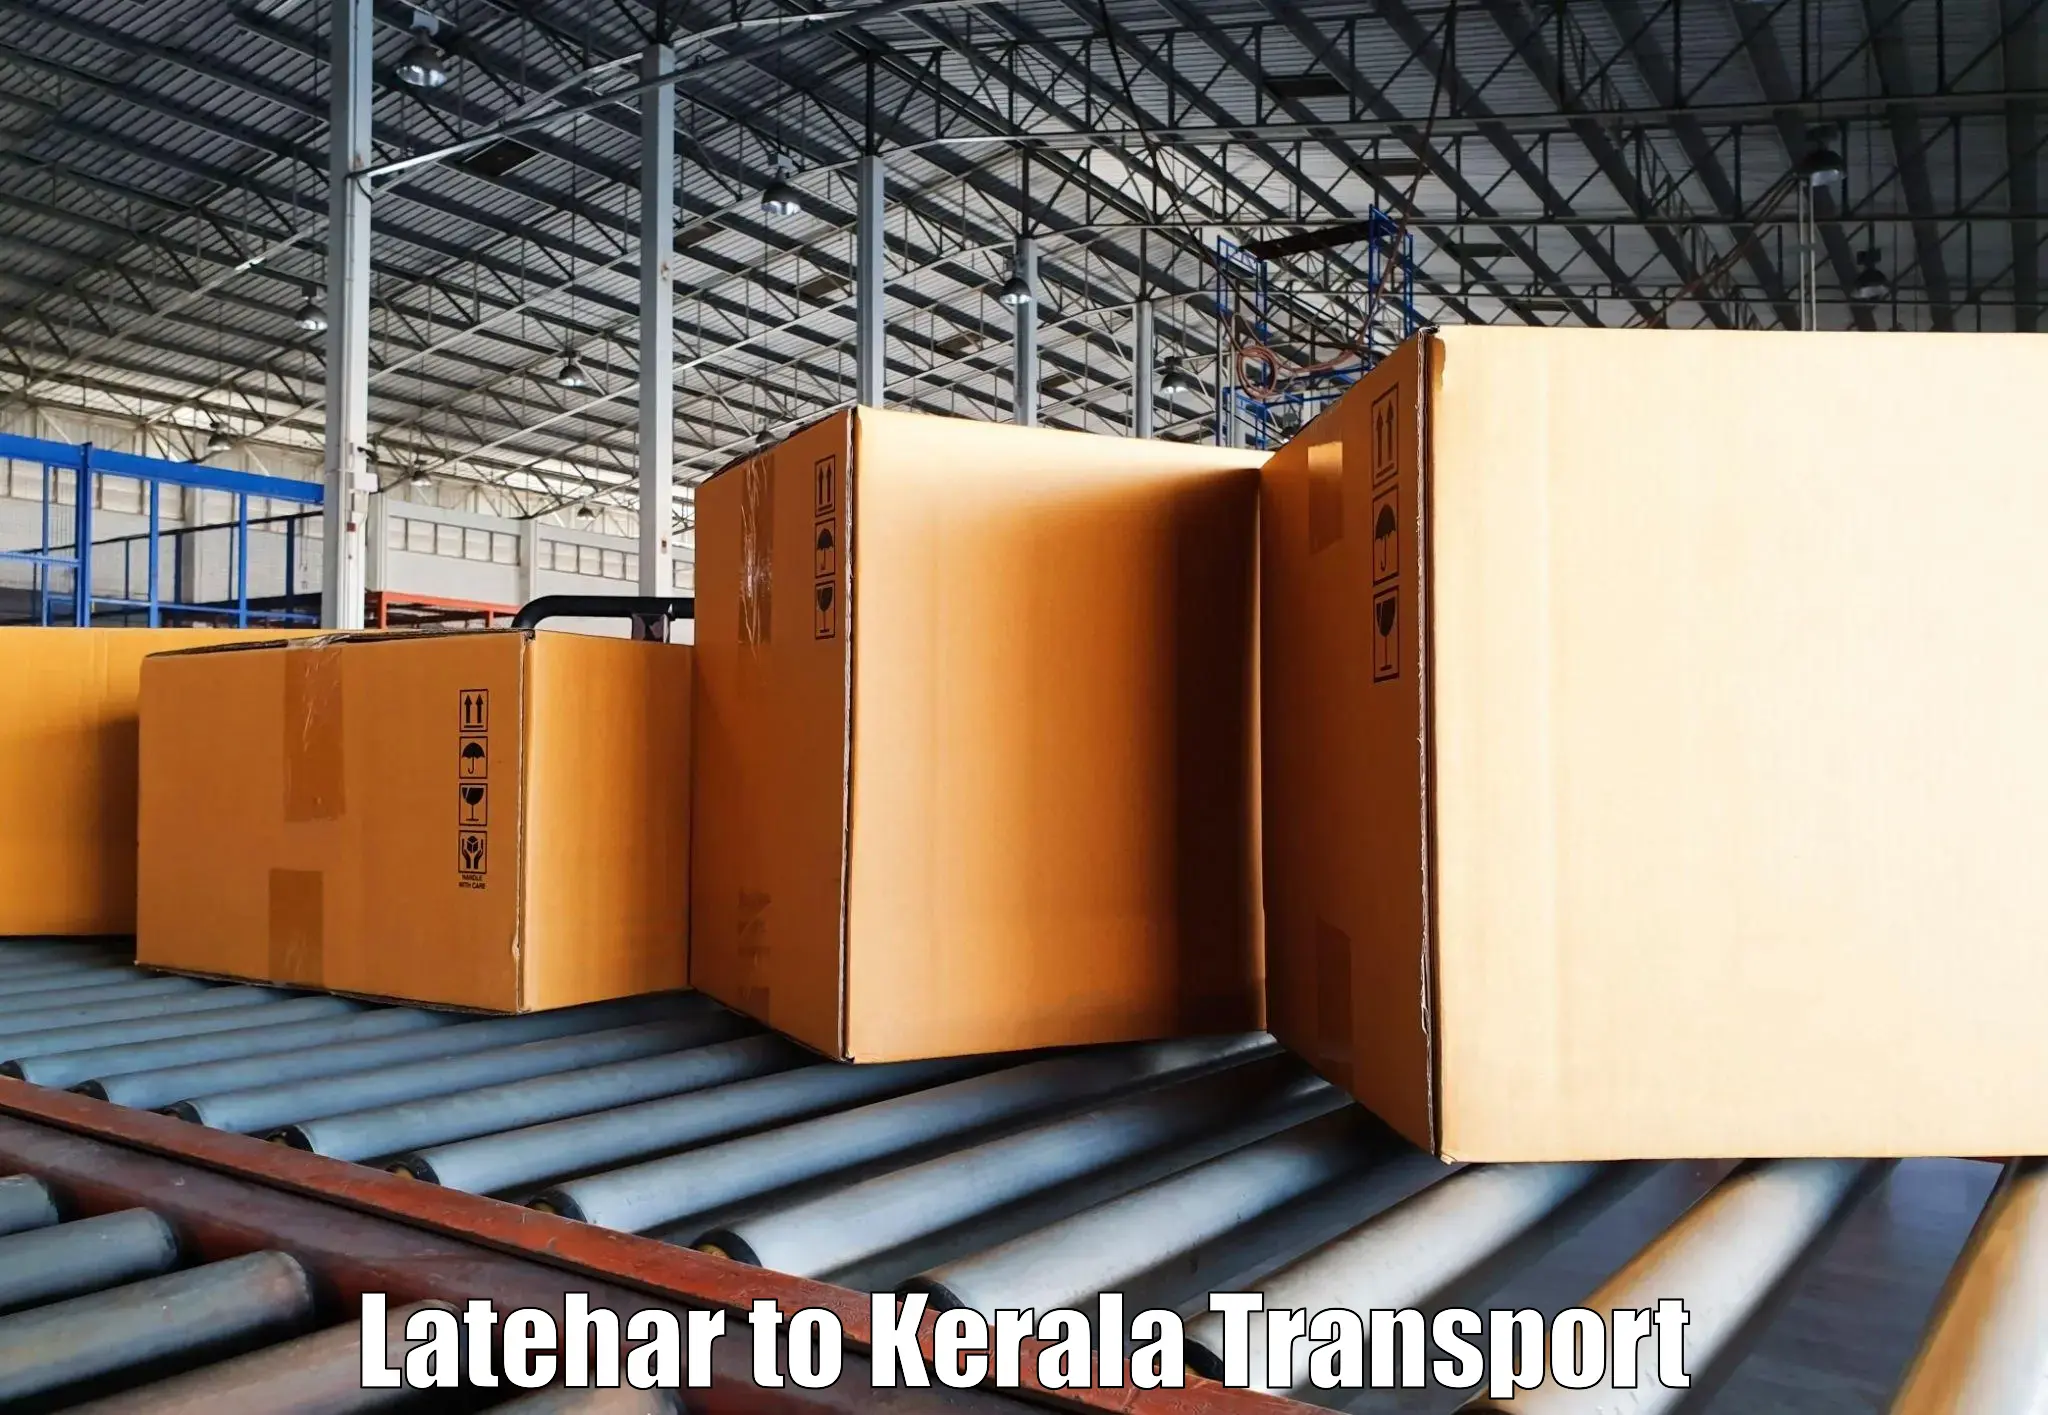 Daily transport service Latehar to Kunnathunad